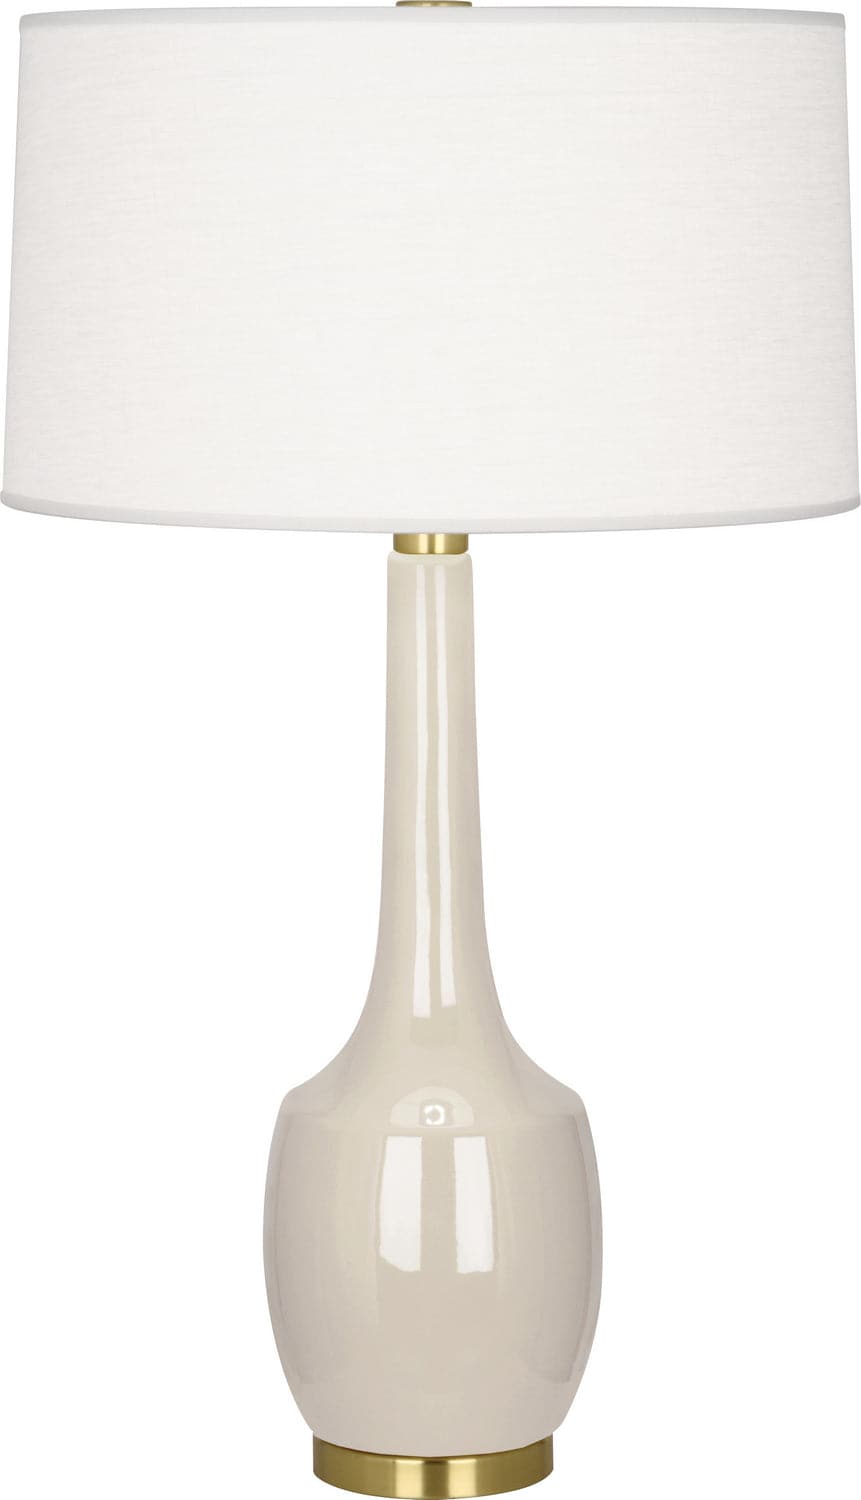 Robert Abbey - BN701 - One Light Table Lamp - Delilah - Bone Glazed